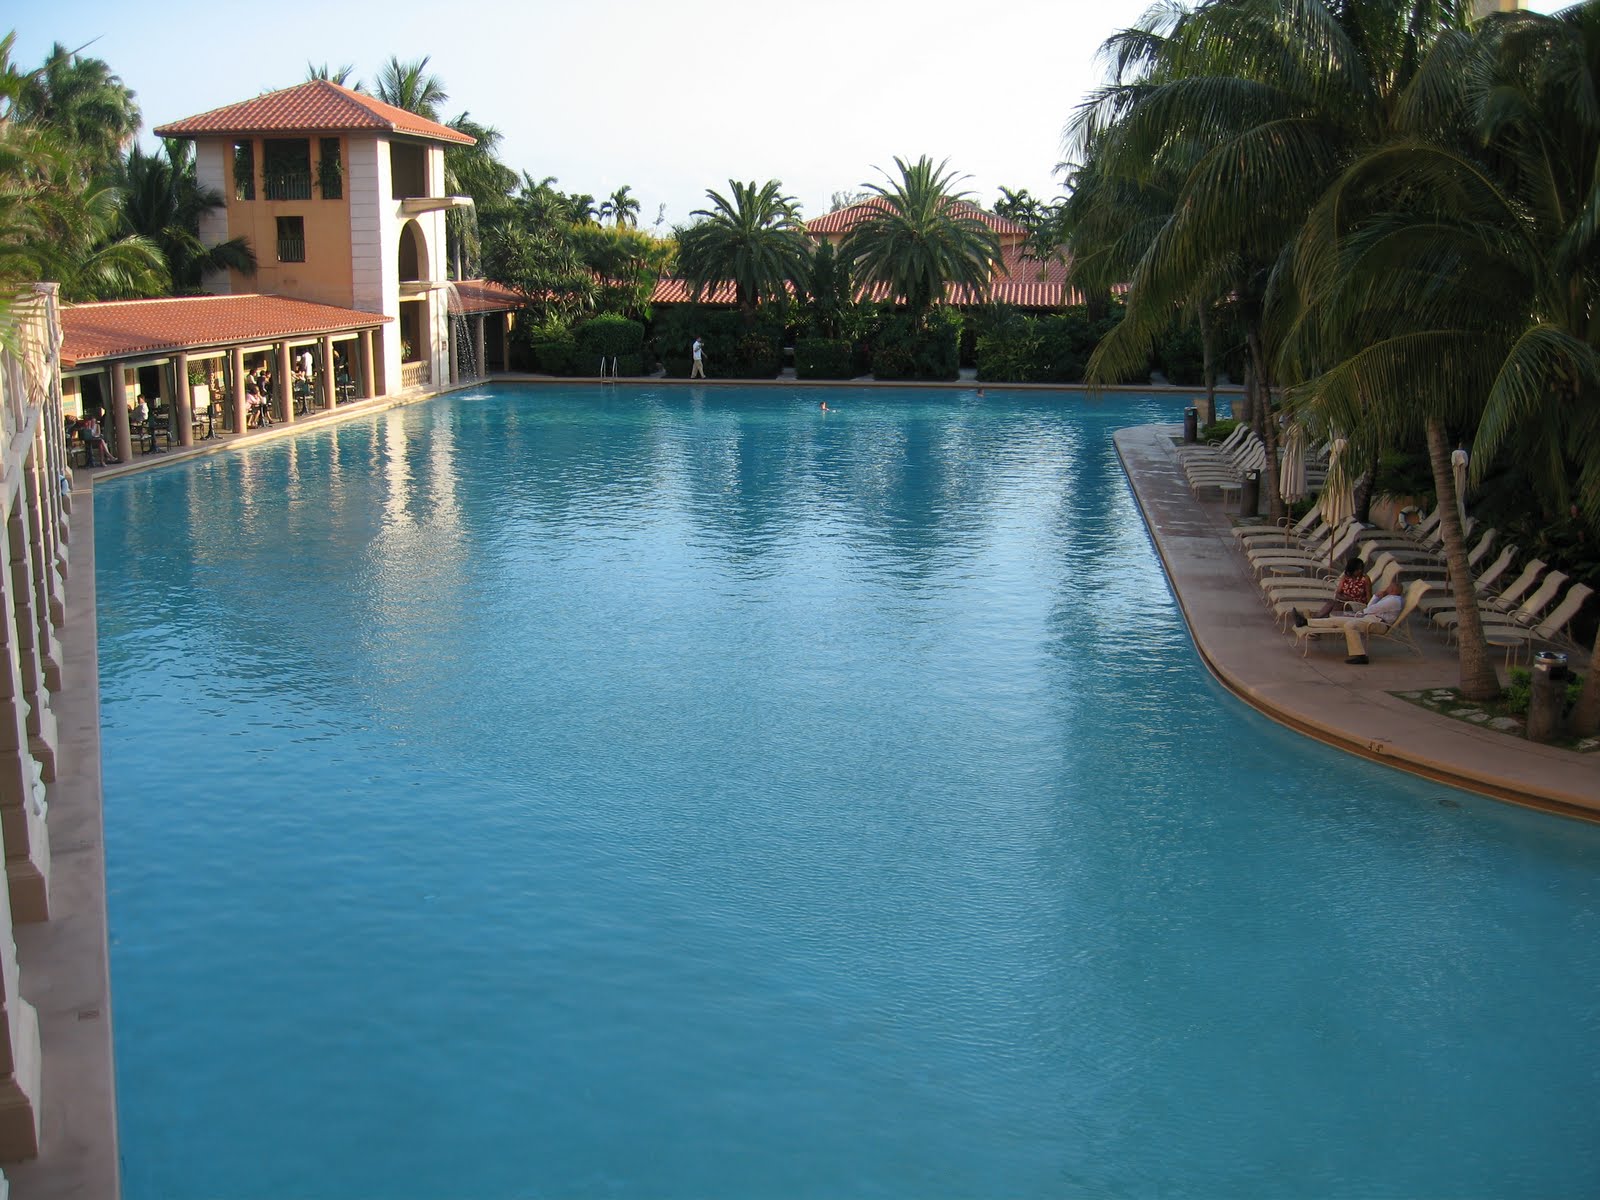 Pool_Biltmore_hotel_coral_gables_florida.jpg